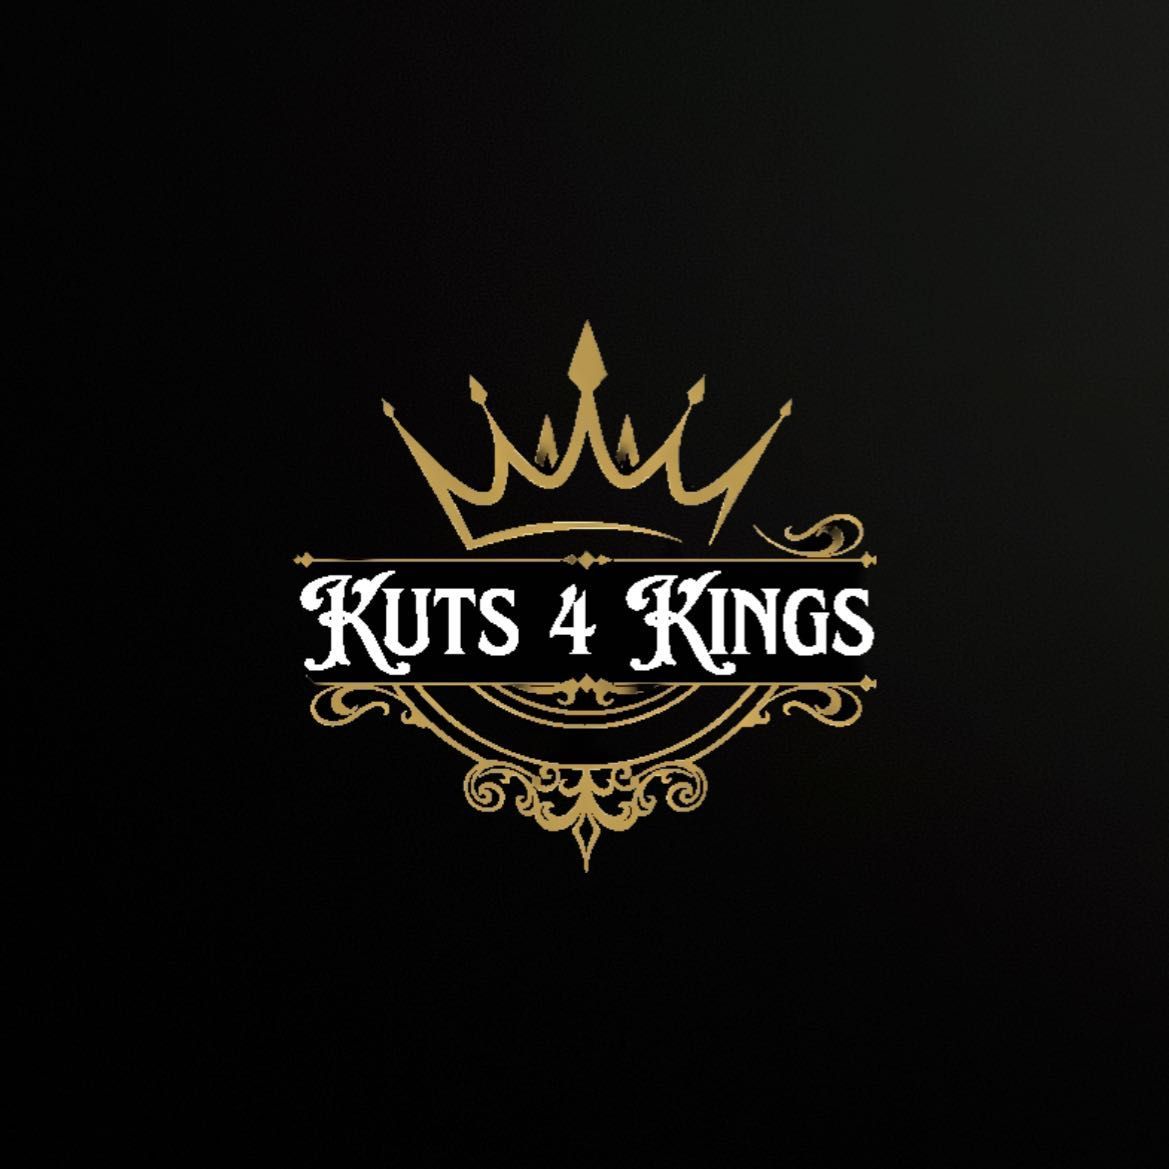 Kuts 4 Kings, 3636 Austell road SW, Marietta, 30008